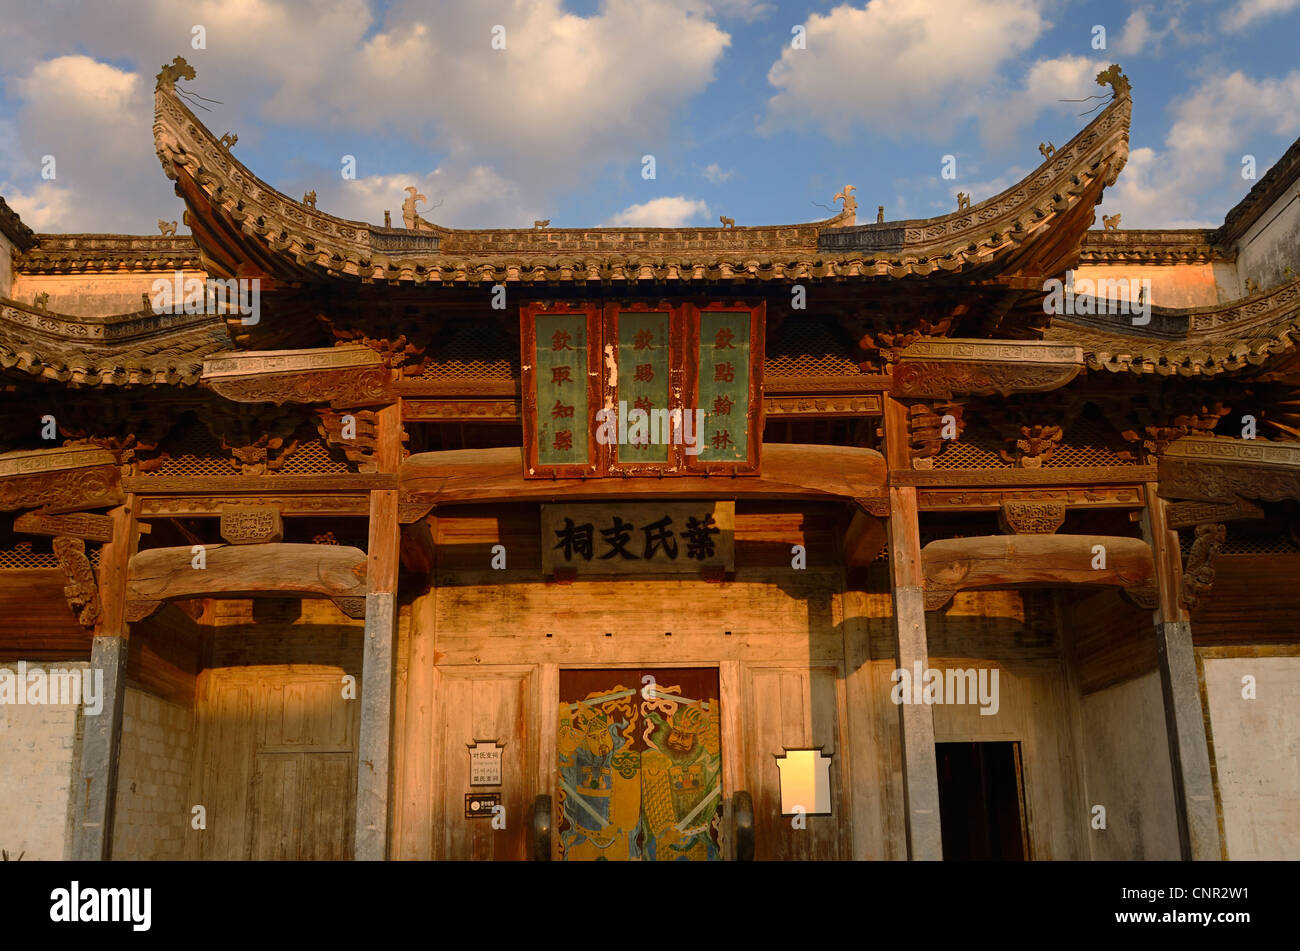 La direction générale de la salle ancestrale sites du patrimoine culturel dans la région de Xiamen chine village Banque D'Images